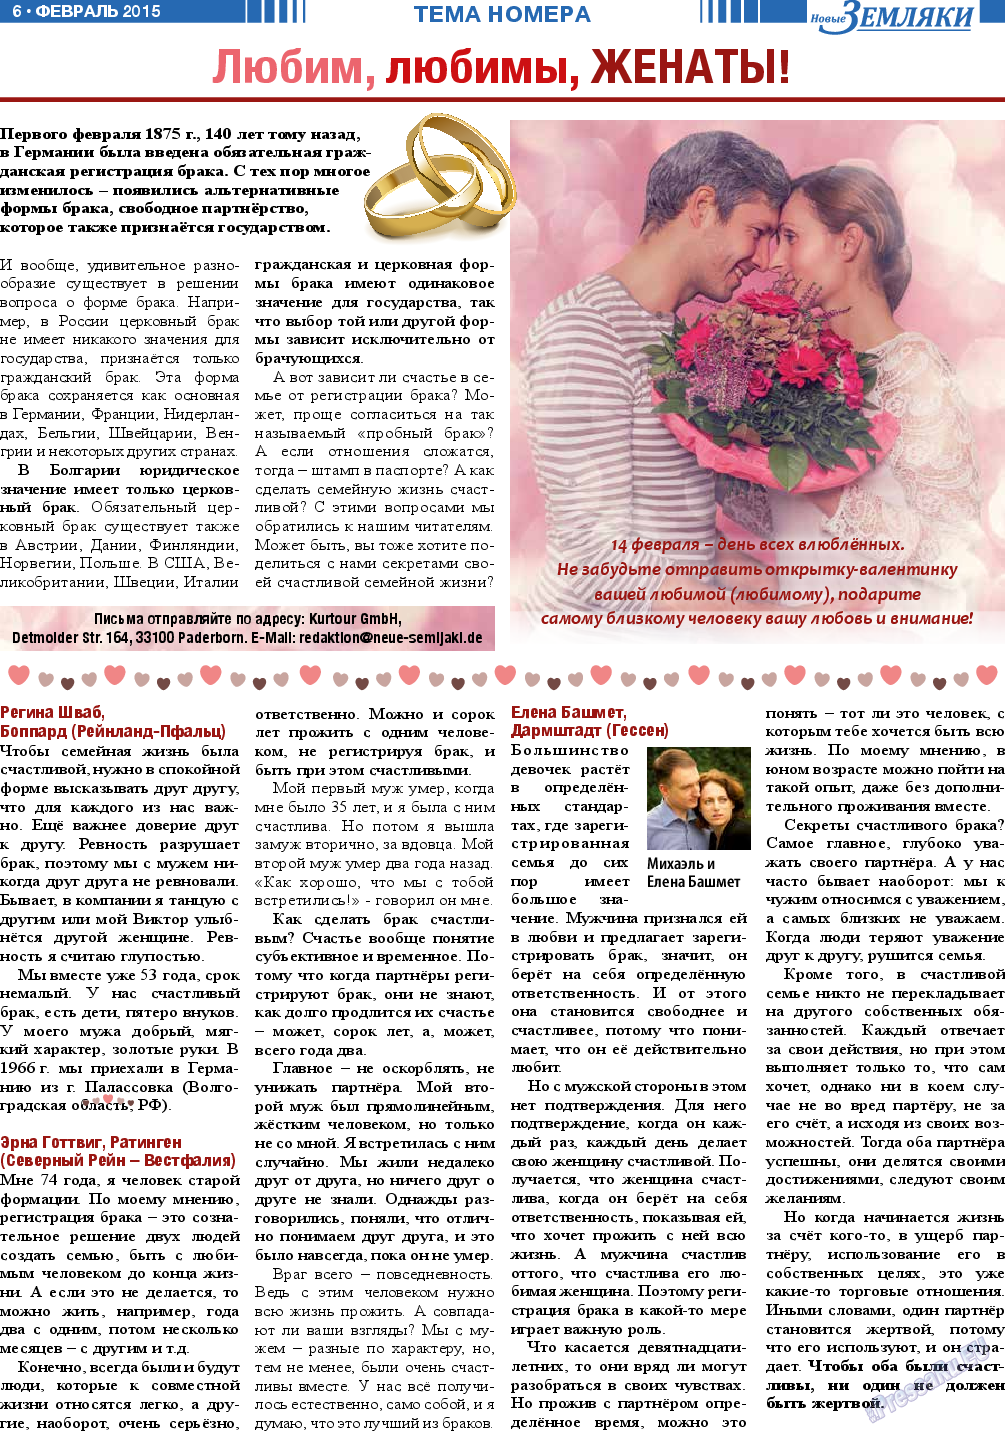 Новые Земляки, газета. 2015 №2 стр.6